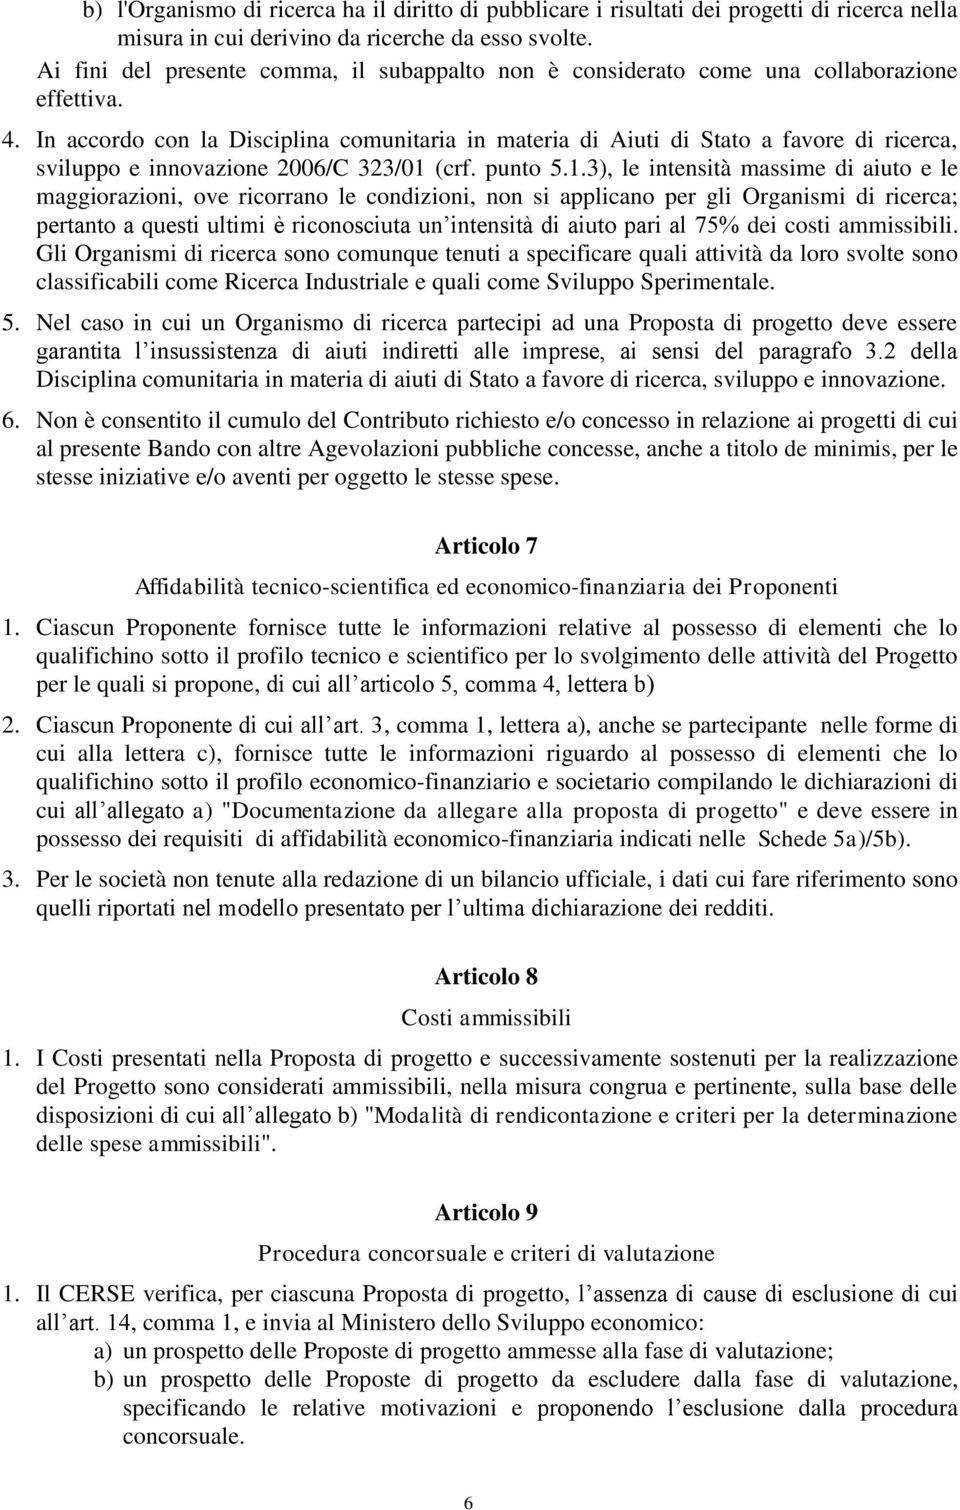 In accordo con la Disciplina comunitaria in materia di Aiuti di Stato a favore di ricerca, sviluppo e innovazione 2006/C 323/01 